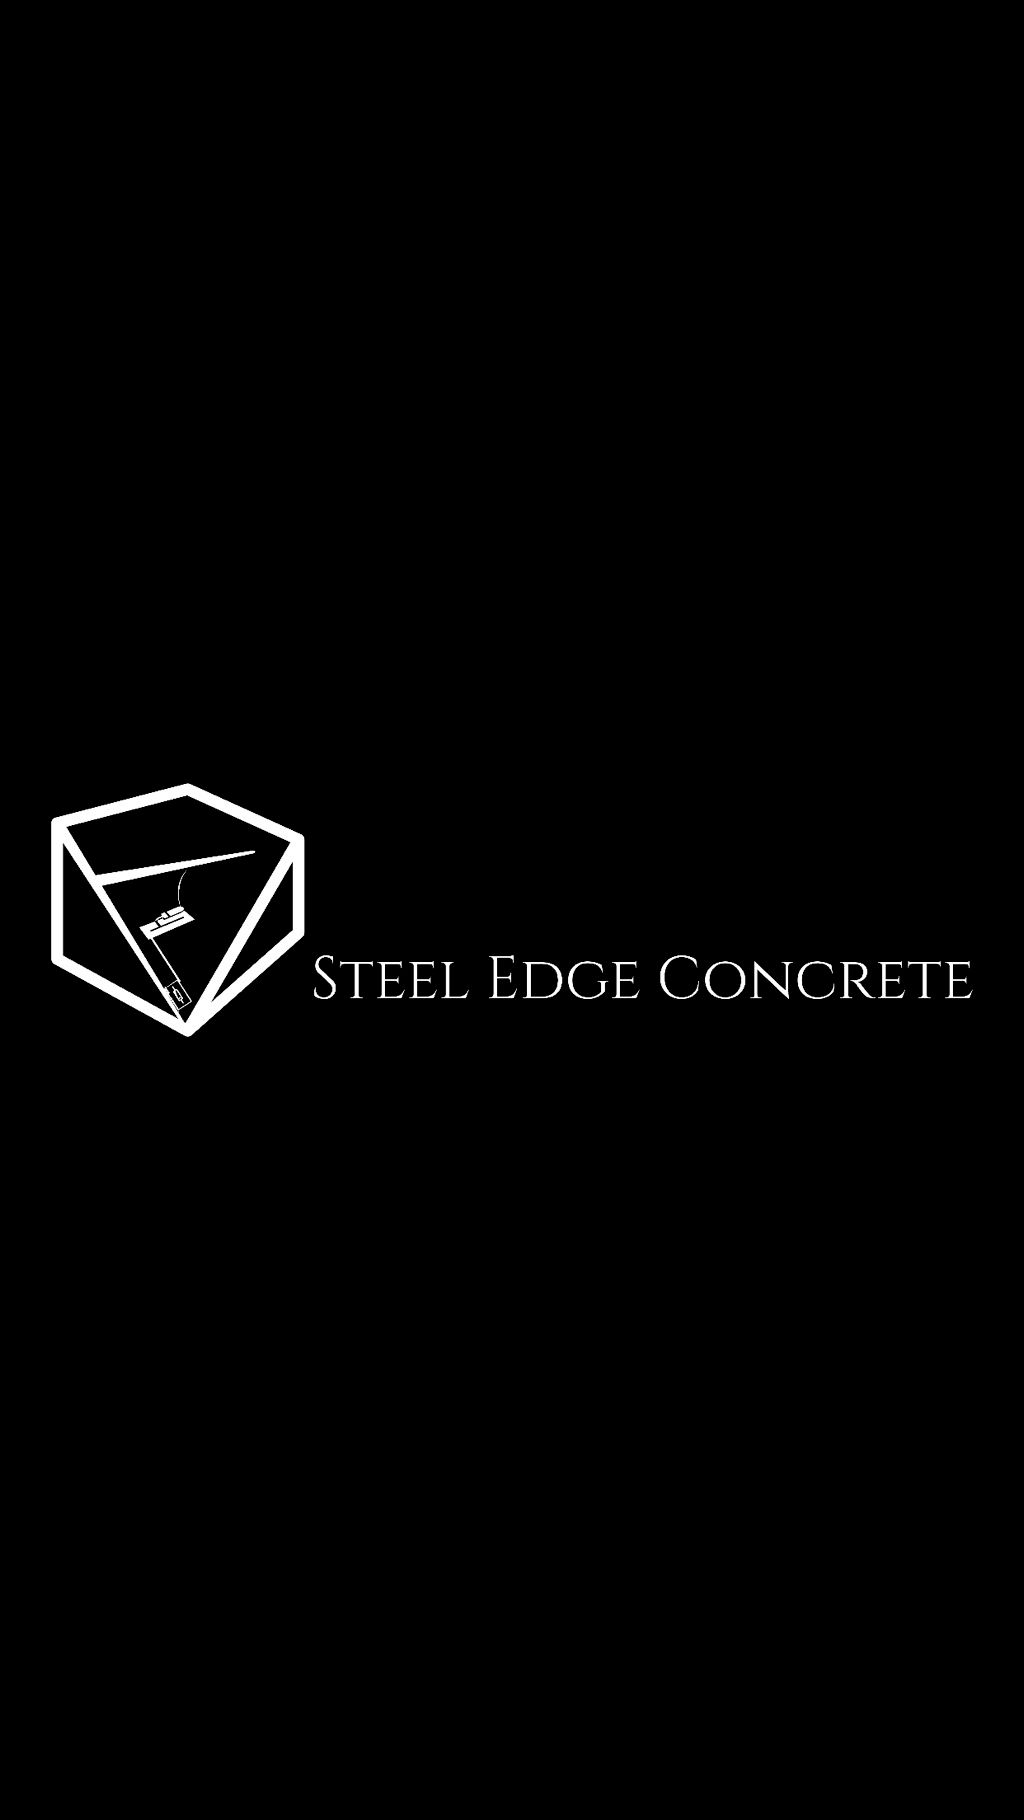 Steel Edge Concrete